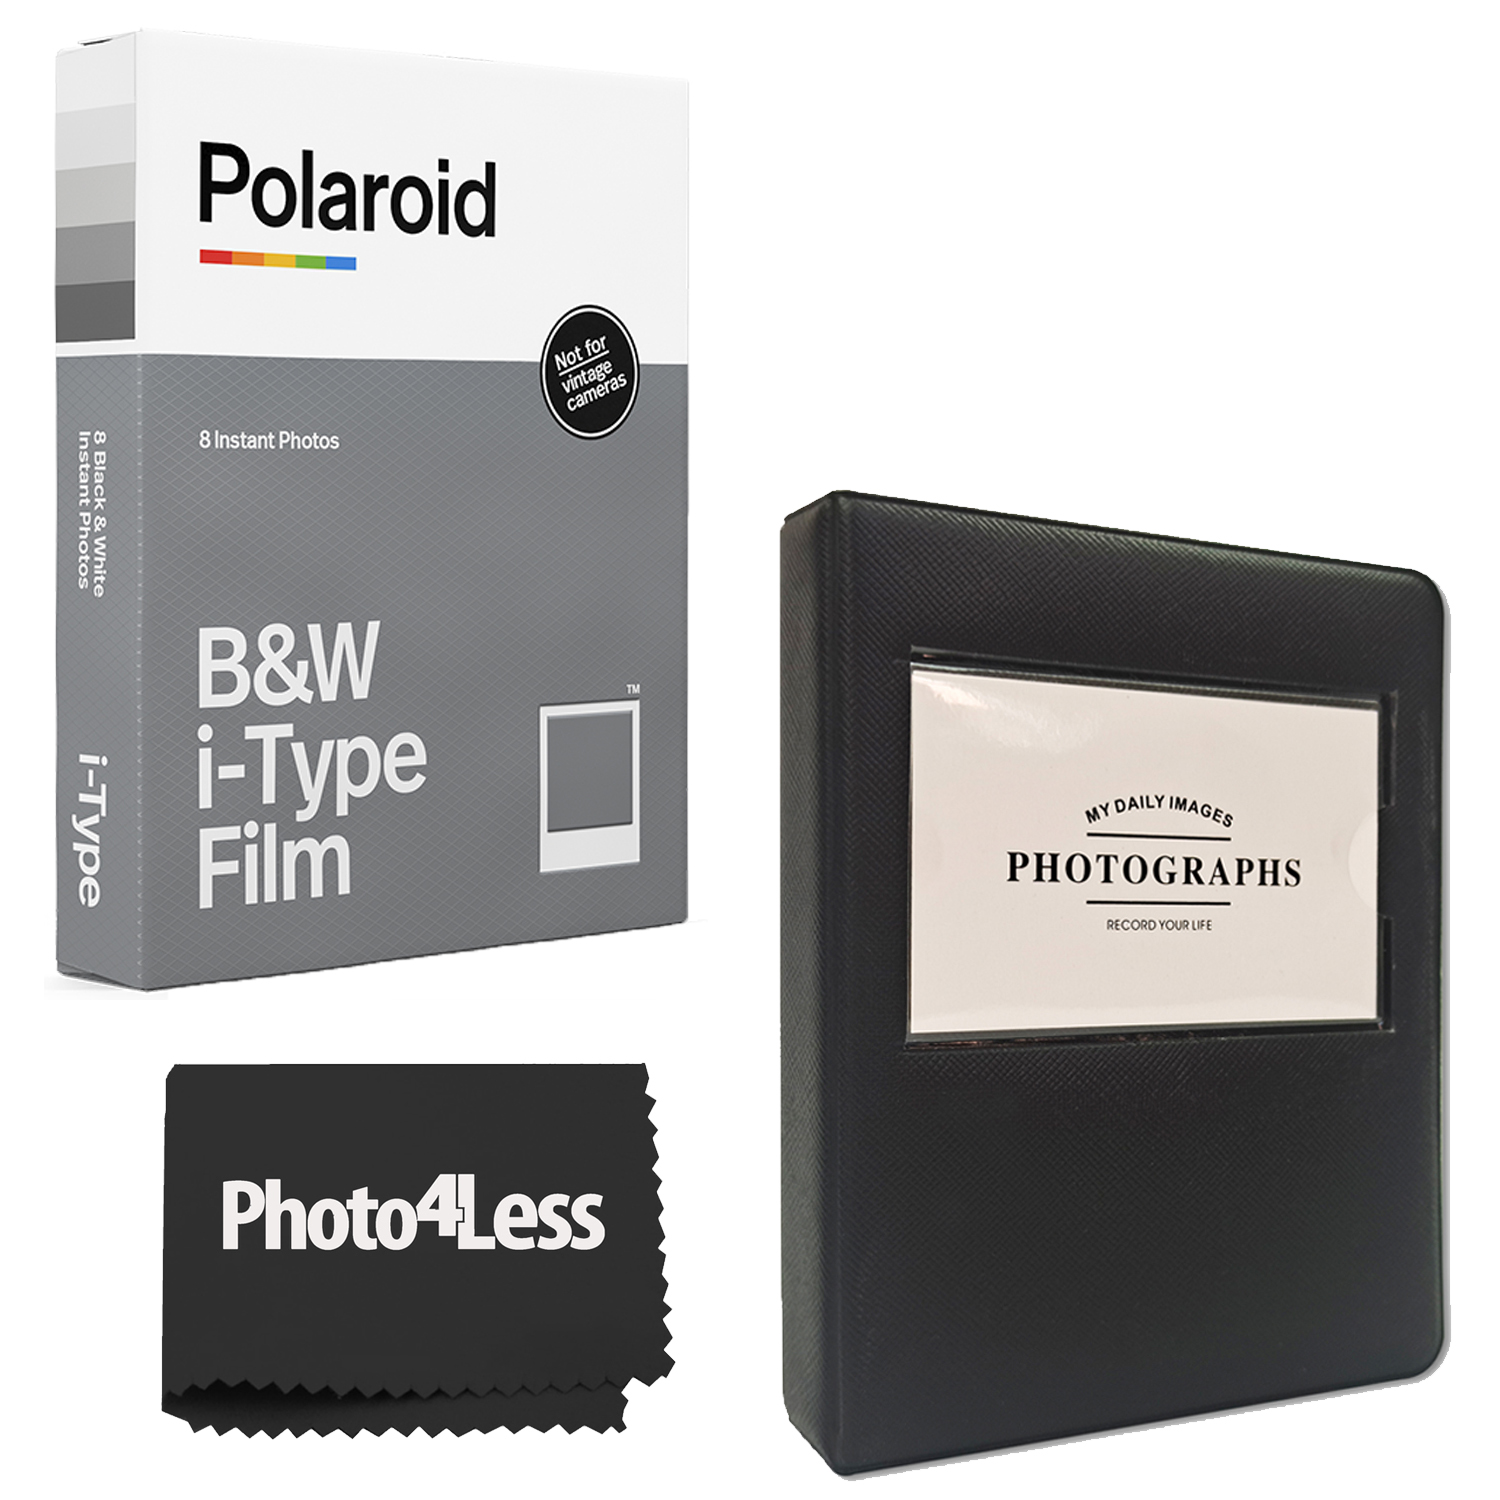 Polaroid B&W Film for I-Type 